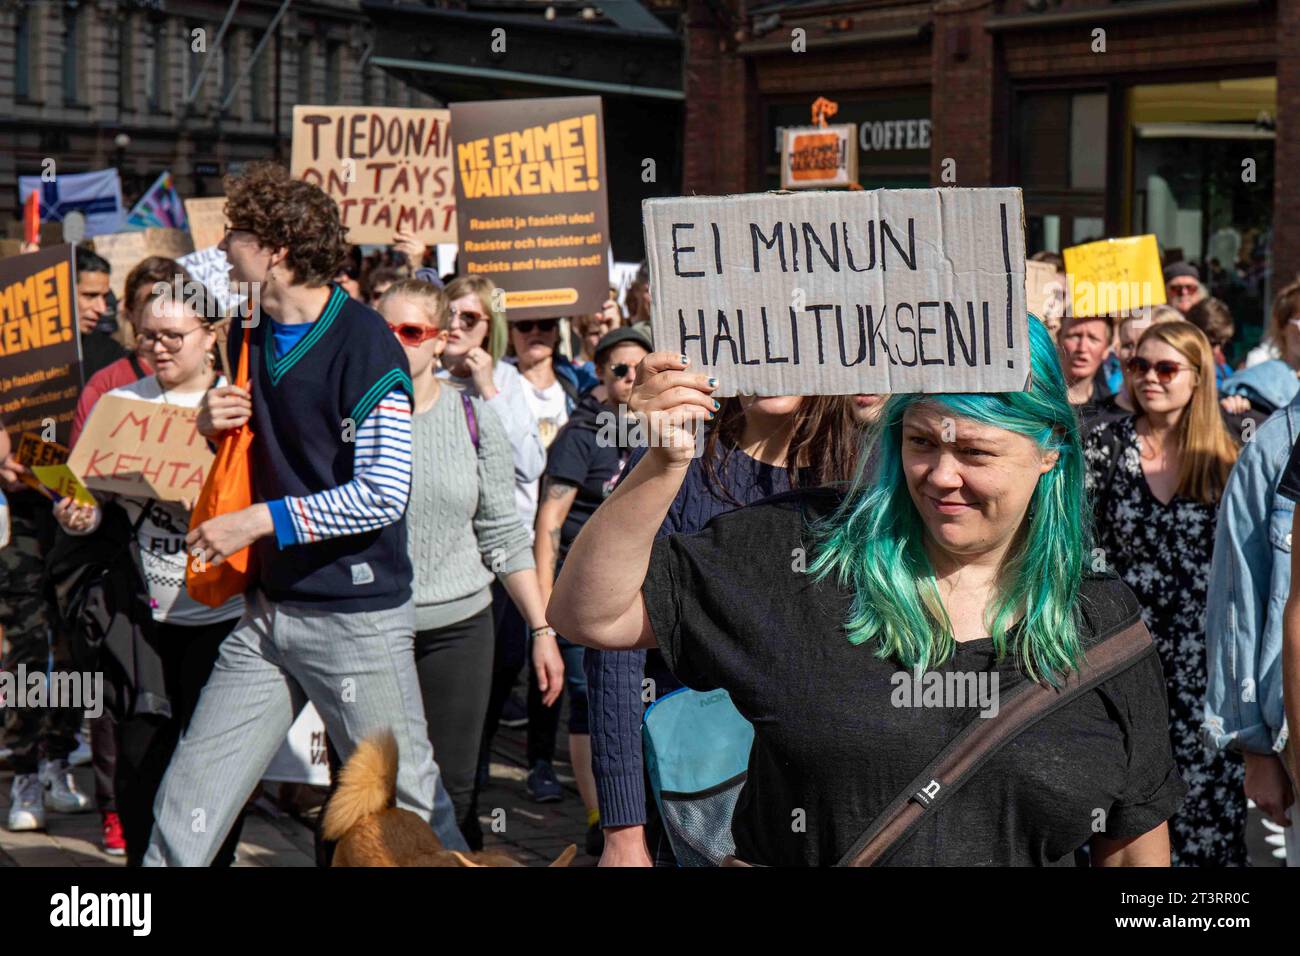 Ei minun hallitukseni! Demonstrant mit Grün hält ein Pappschild auf mich, emme vaikene! Anti-Rassismus-Demonstration in Helsinki, Finnland. Stockfoto